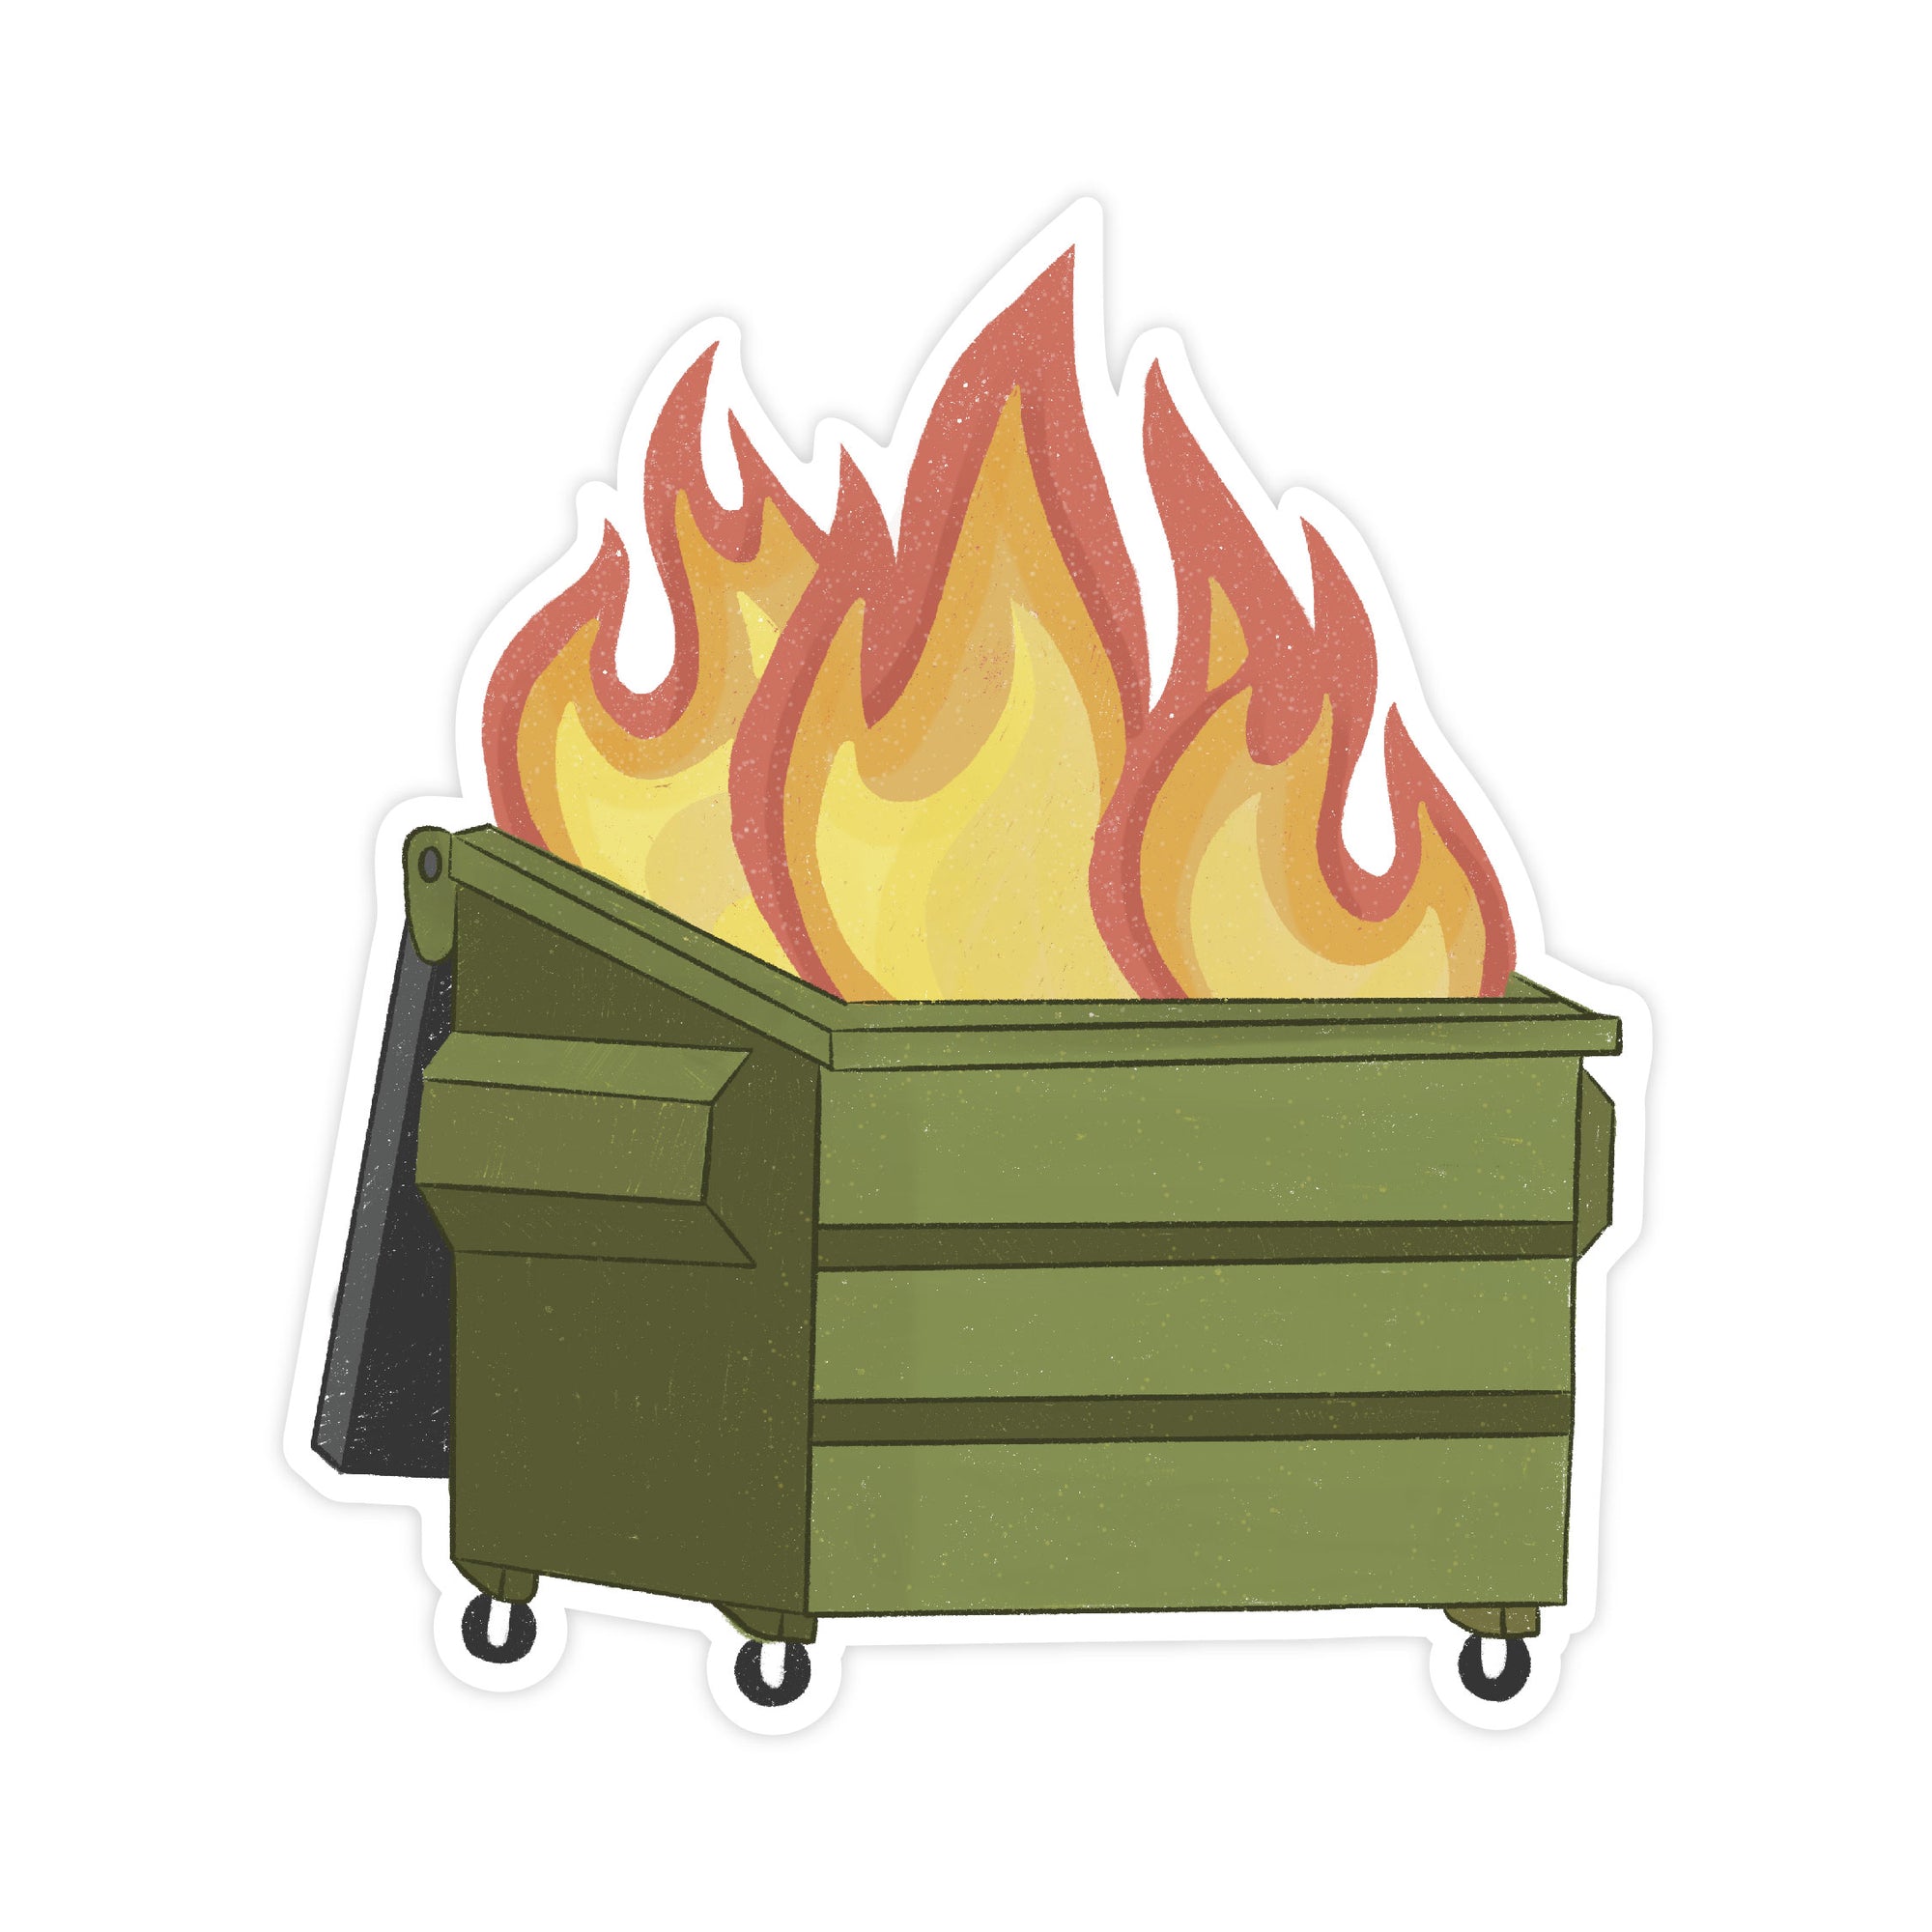 Dumpster Fire Sticker